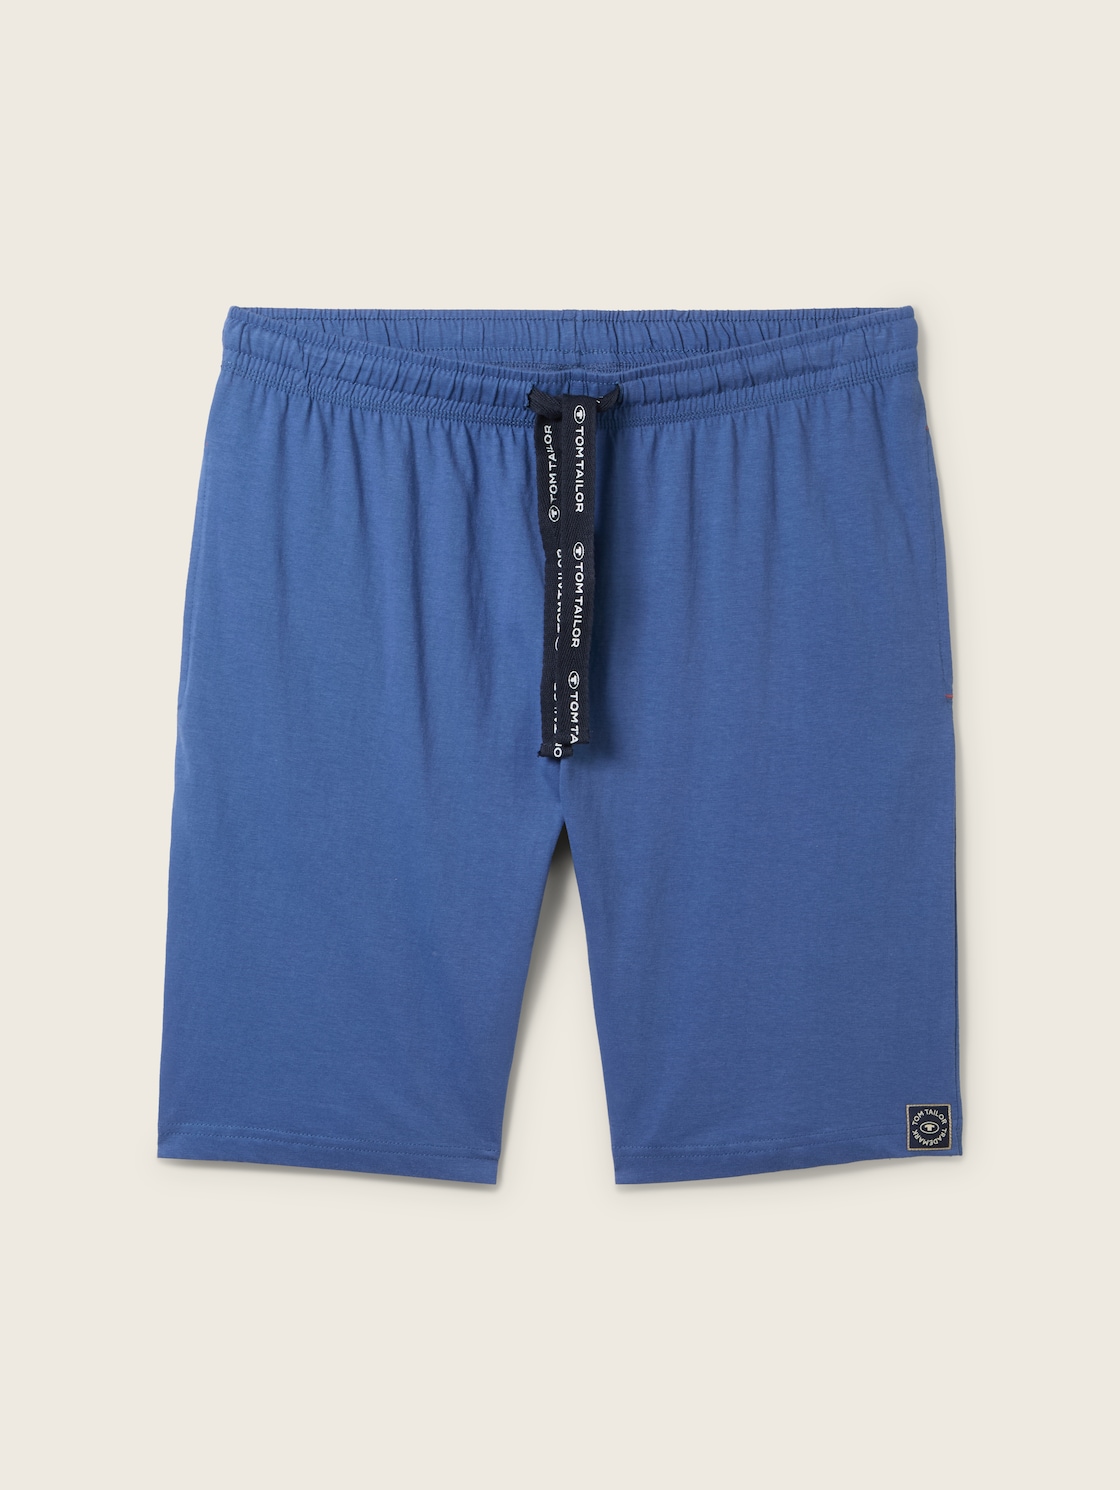 TOM TAILOR Herren Bermuda-Shorts, blau, Uni, Gr. 54 von Tom Tailor